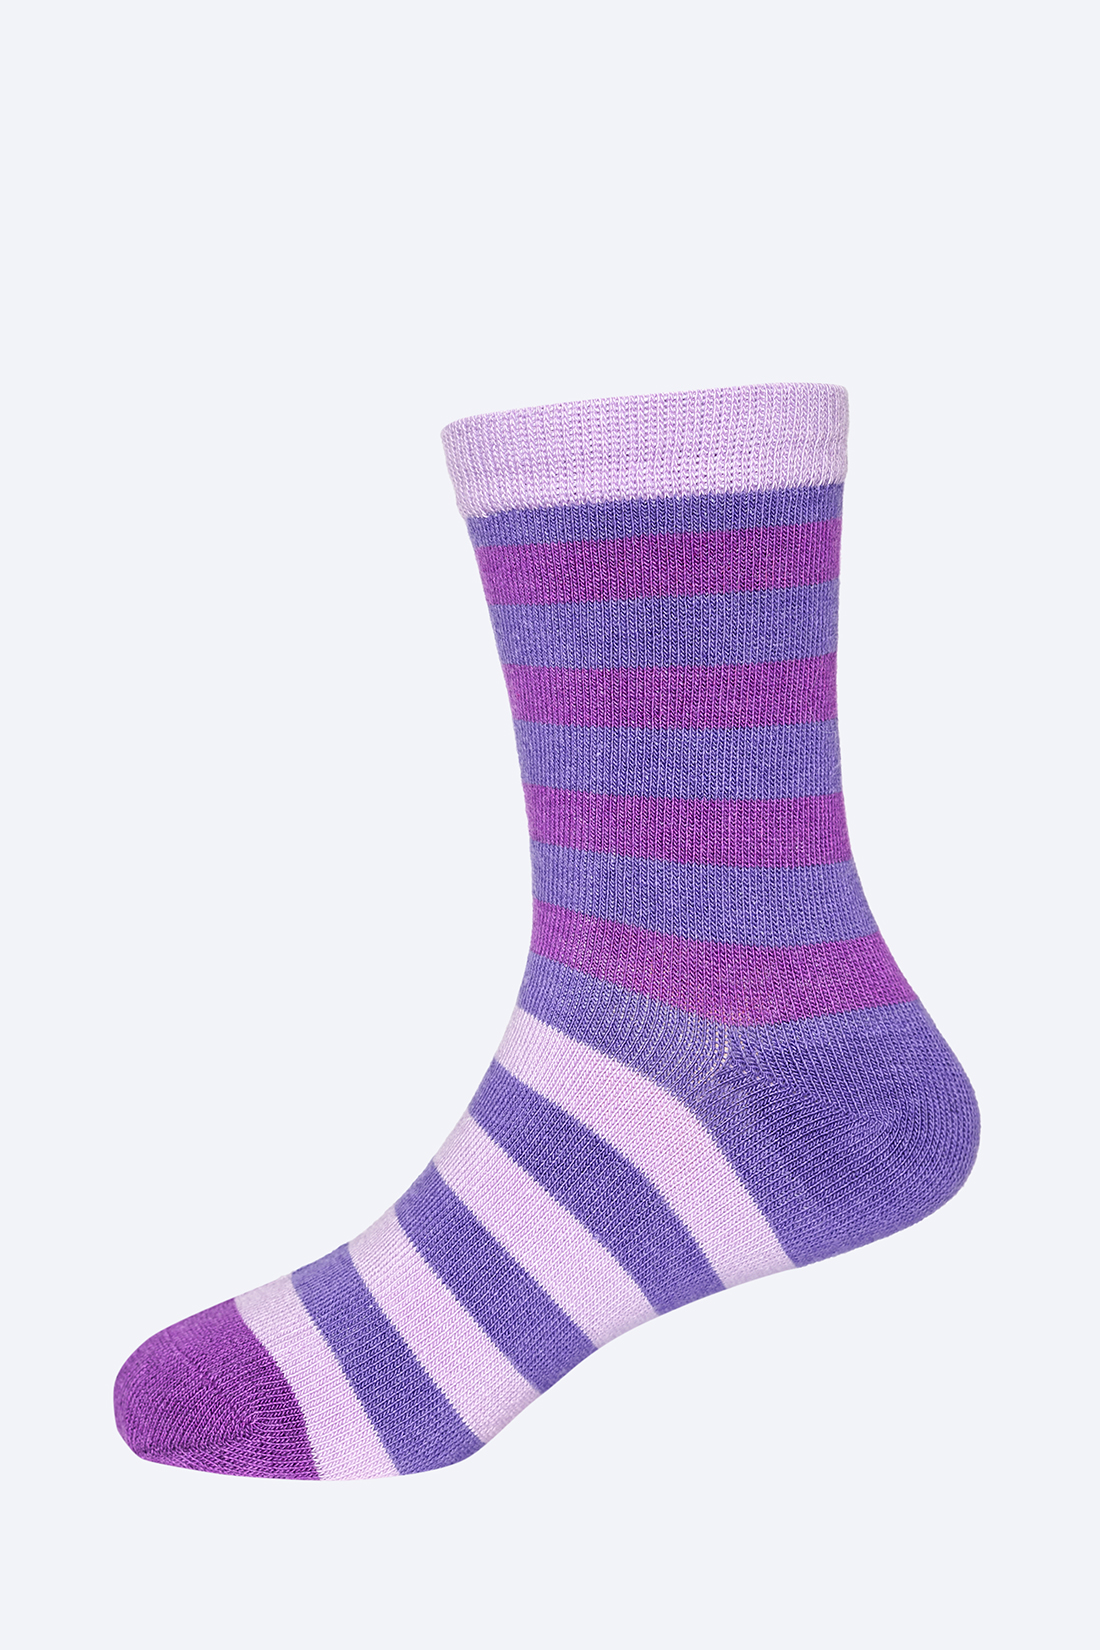 Носки для девочки (арт. baon BK399505), размер 29/31, цвет фиолетовый